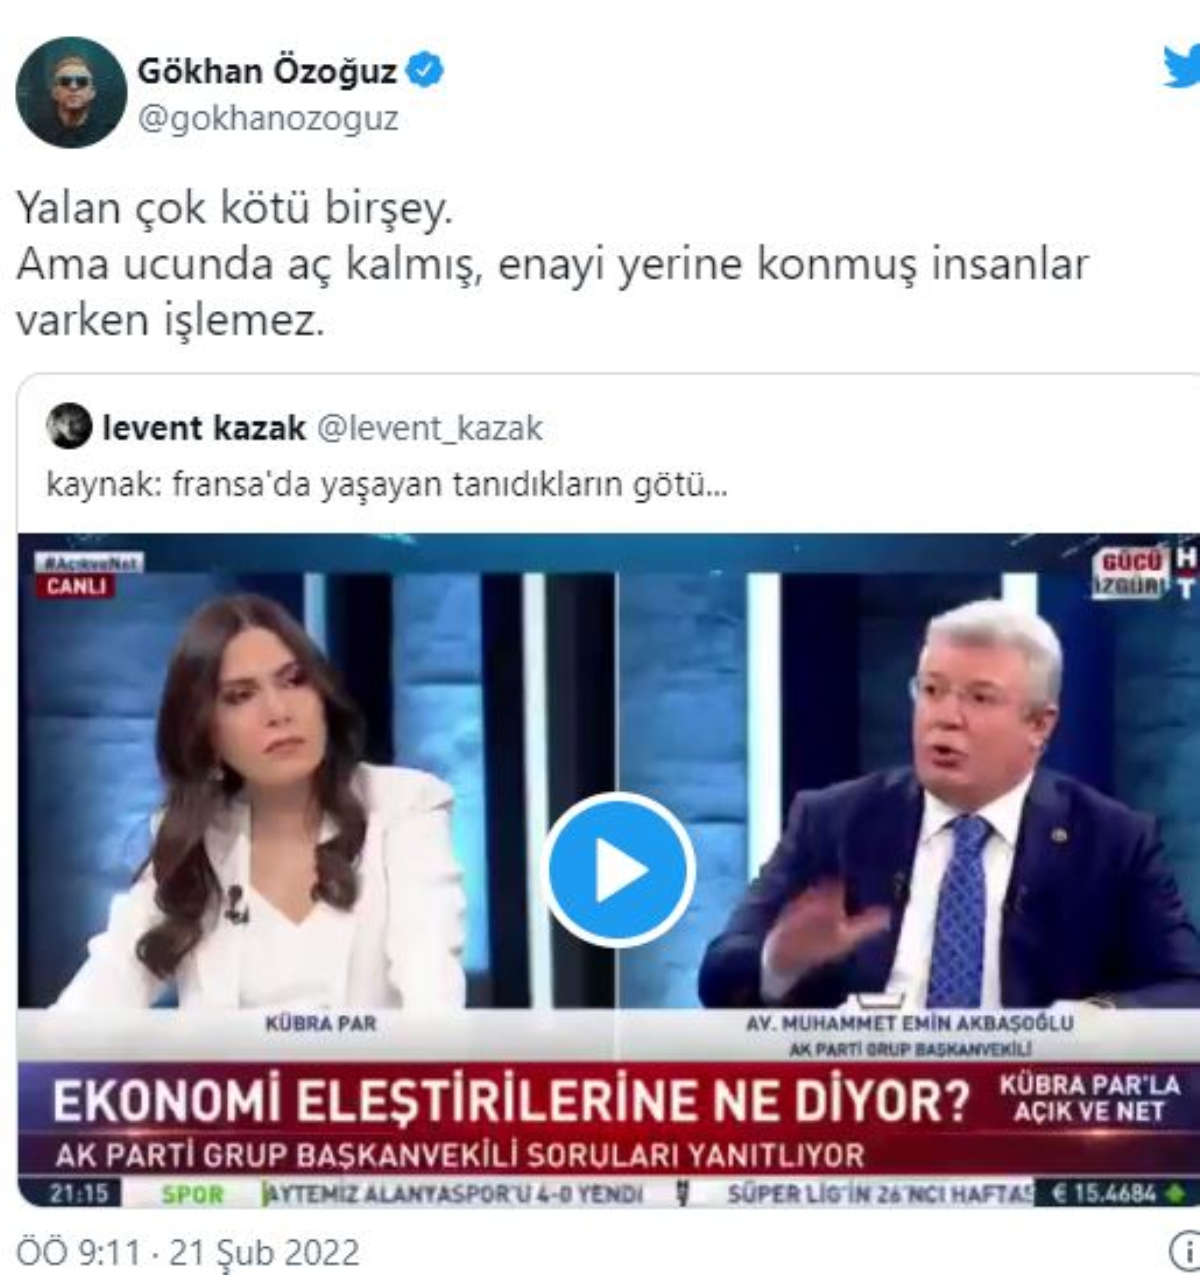 AKP Grup başkanvekili Muhammet Emin Akbaşoğlu'nun enflasyon' hesabına Gökhan Özoğuz'dan tepki